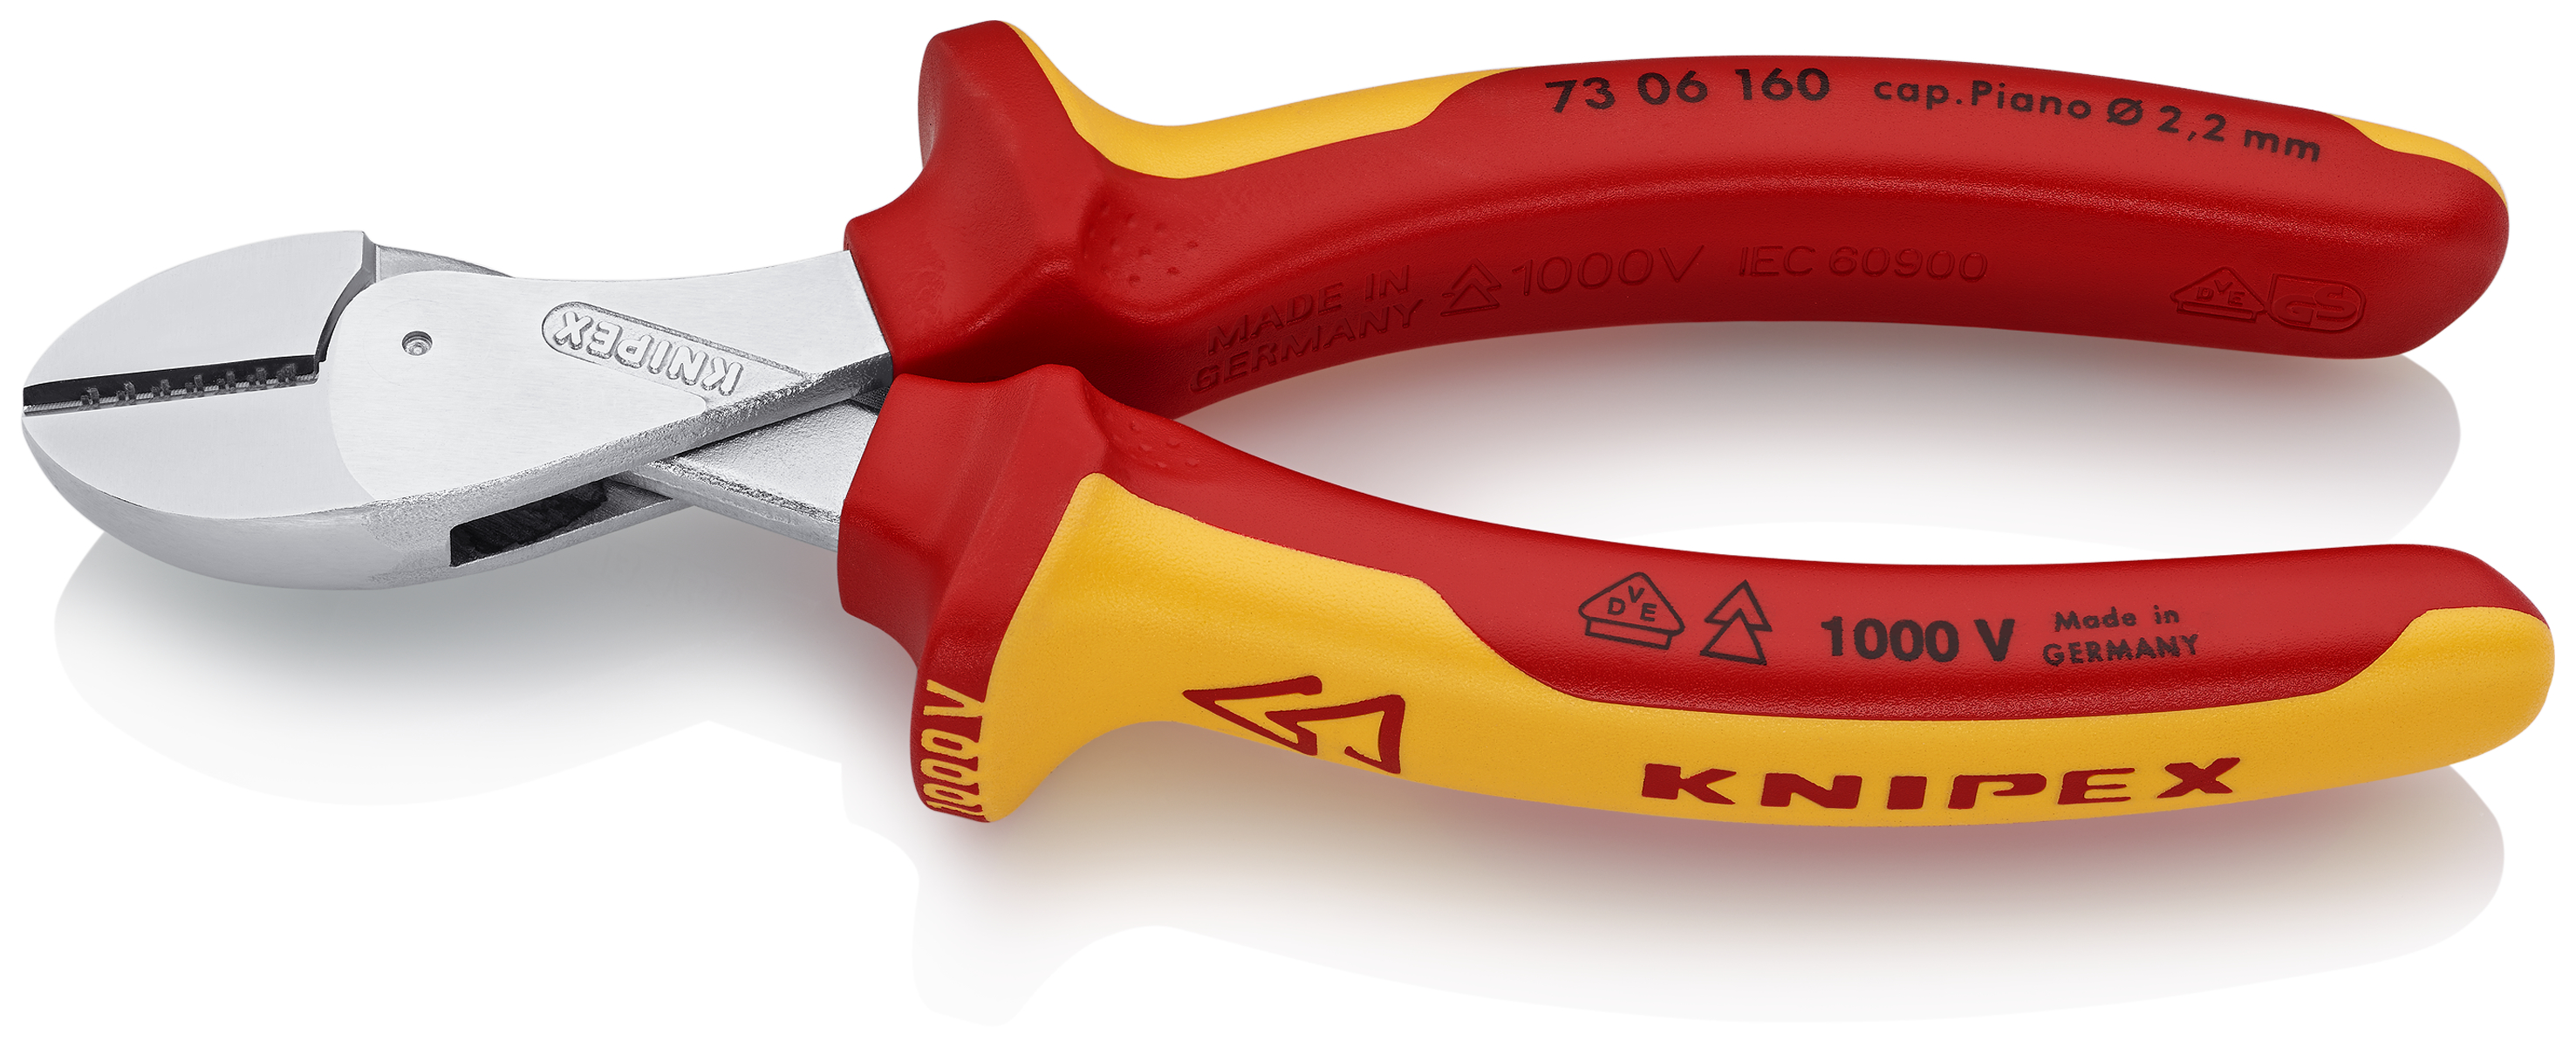 KNIPEX 73 06 160 X-Cut® Kompakt-Seitenschneider hochübersetzt 160 mm |  CBdirekt Profi-Shop für Werkzeug / Sanitär / Garten